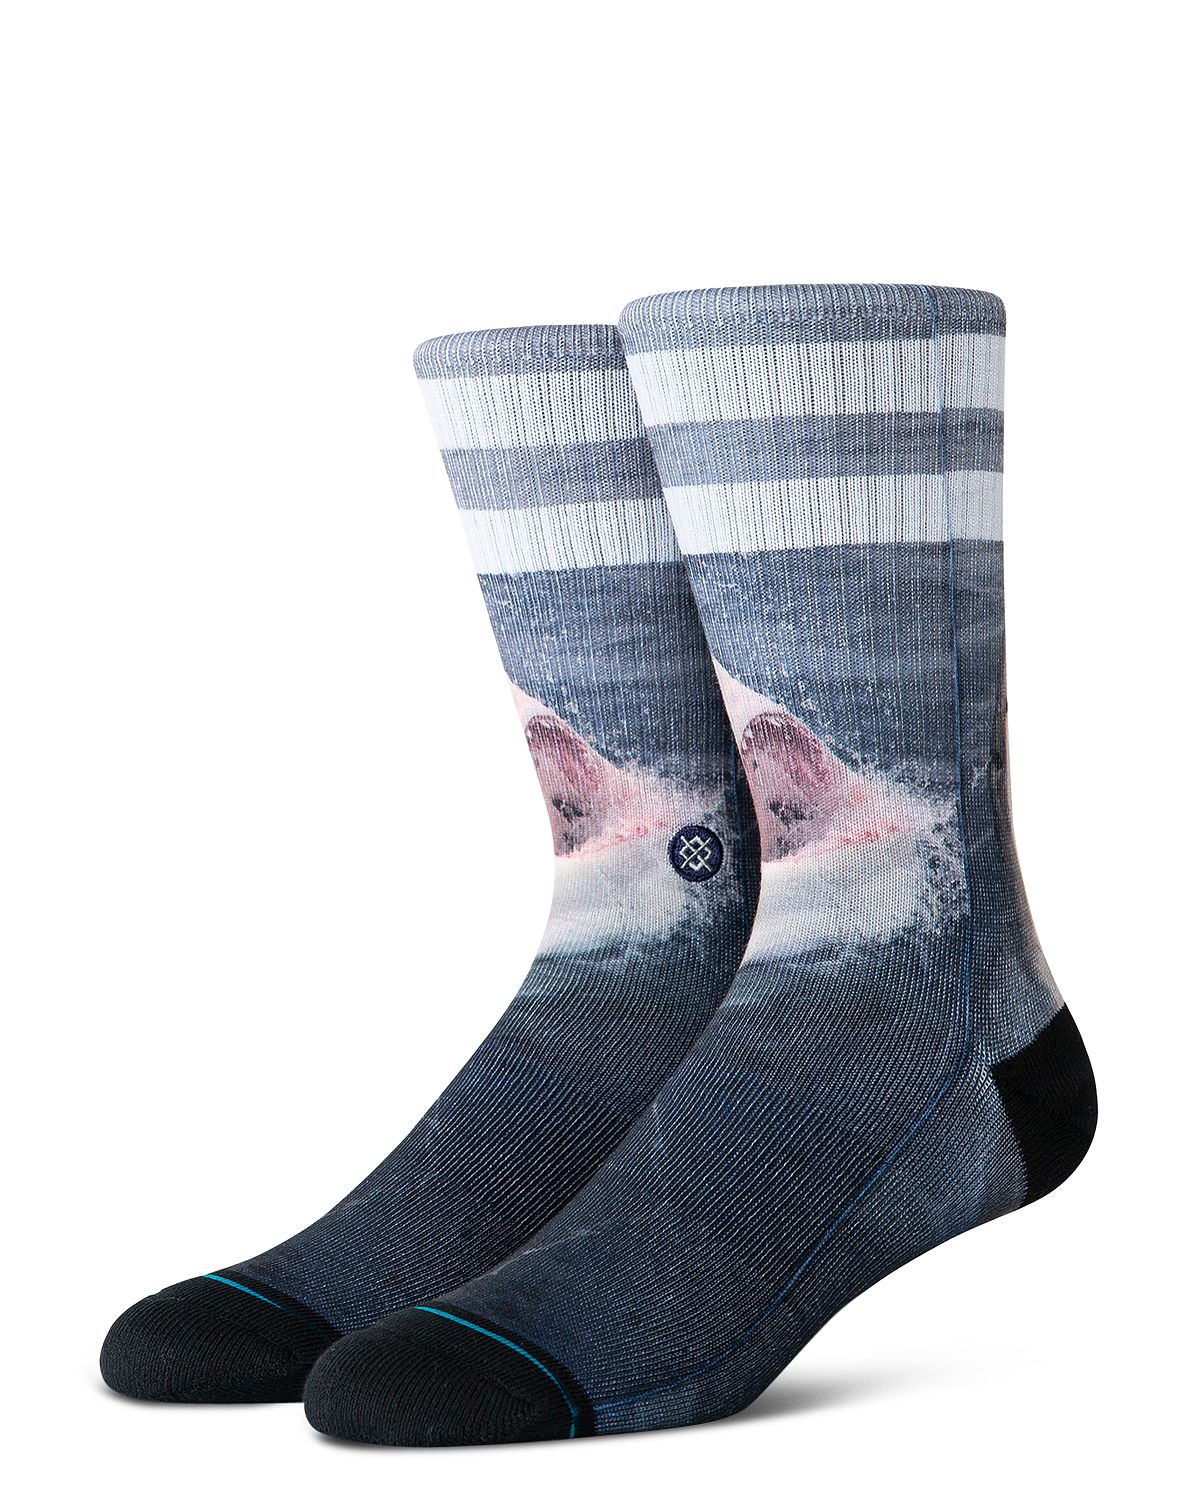 Stance Brucey Shark Socks Gray